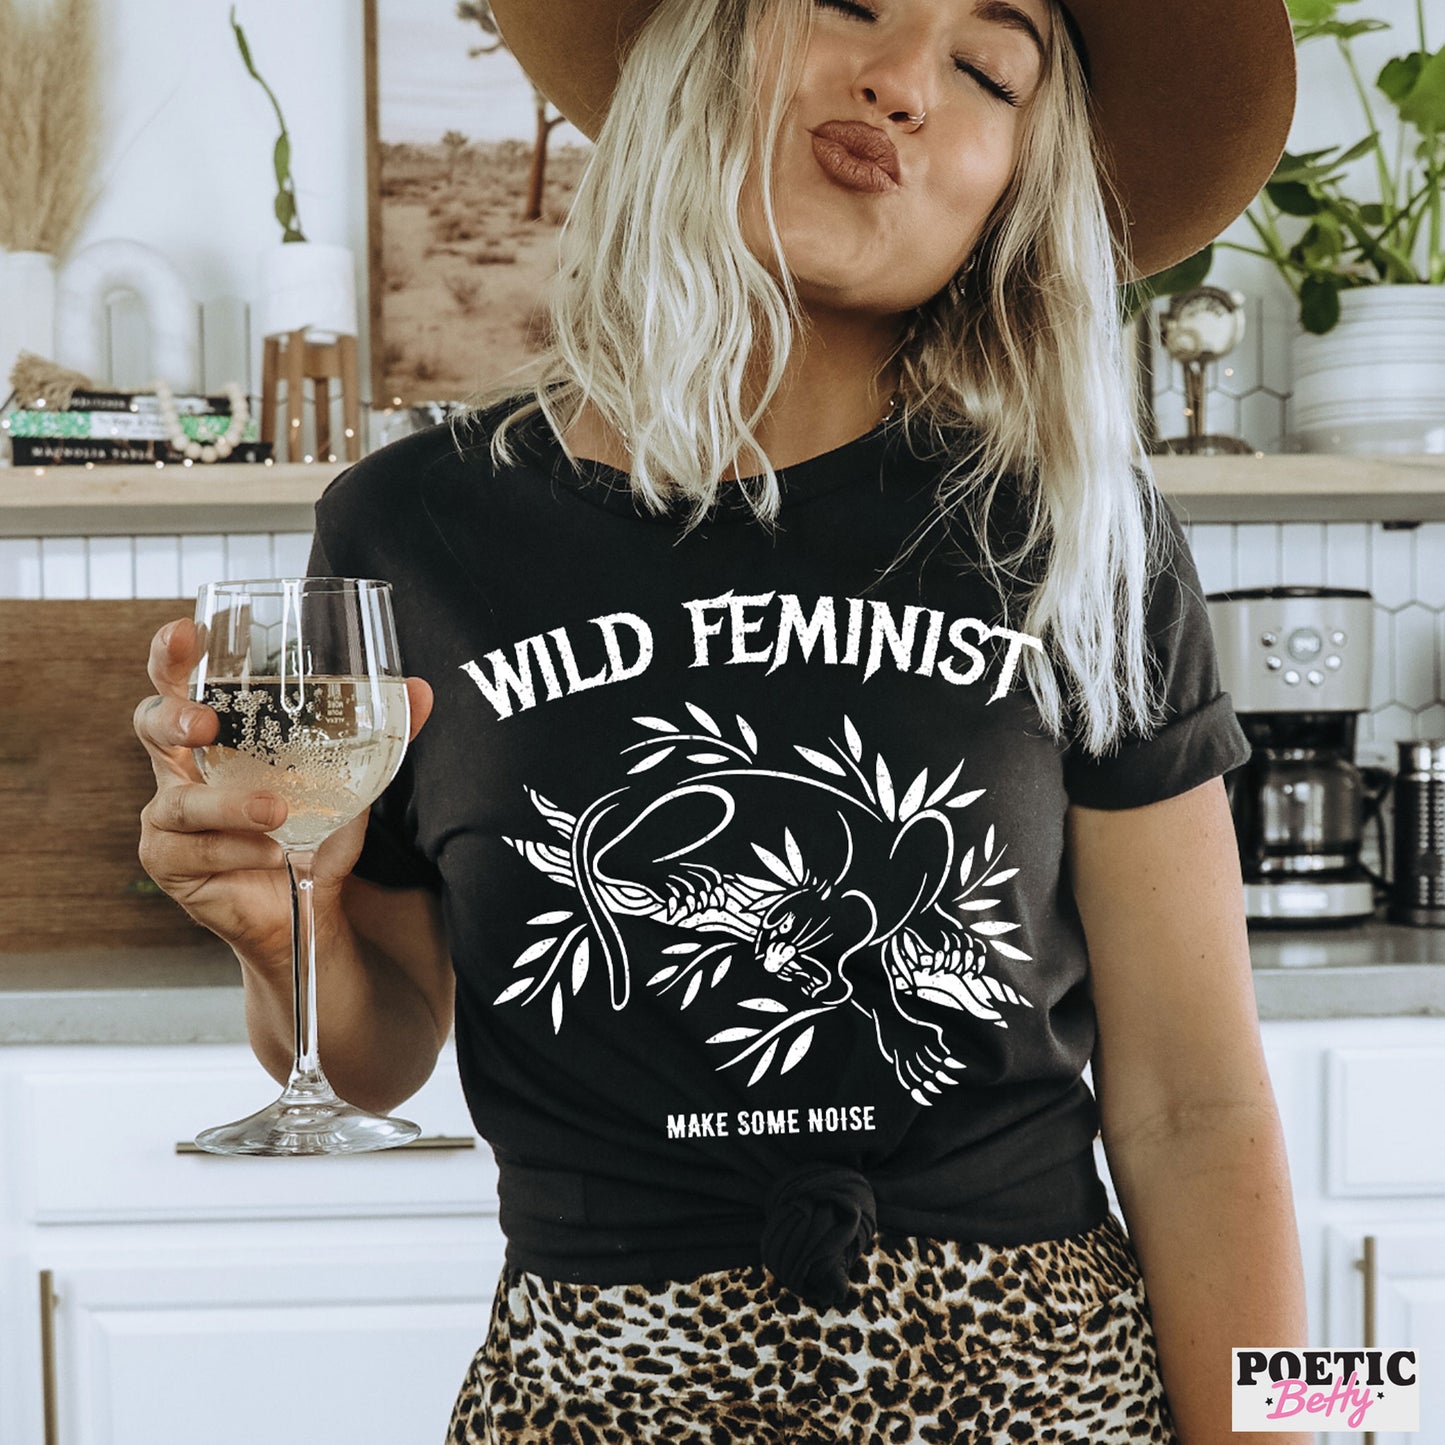 Wild Feminist Make Some Noise T-Shirt